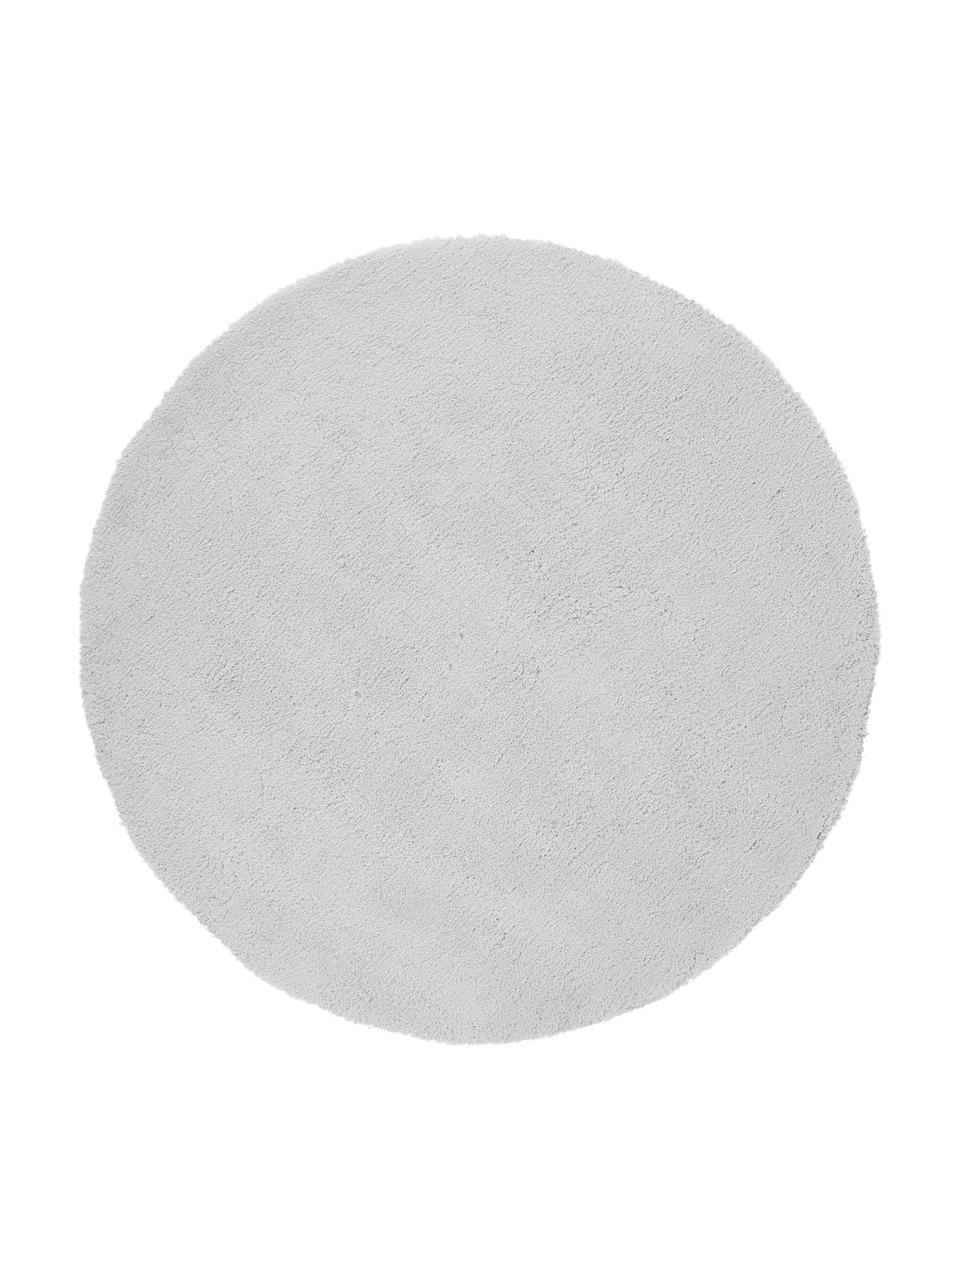 Fluffy Rond hoogpolig vloerkleed Leighton in lichtgrijs-beige, Onderzijde: 100% katoen, Lichtgrijs-beige, Ø 120 cm (maat S)